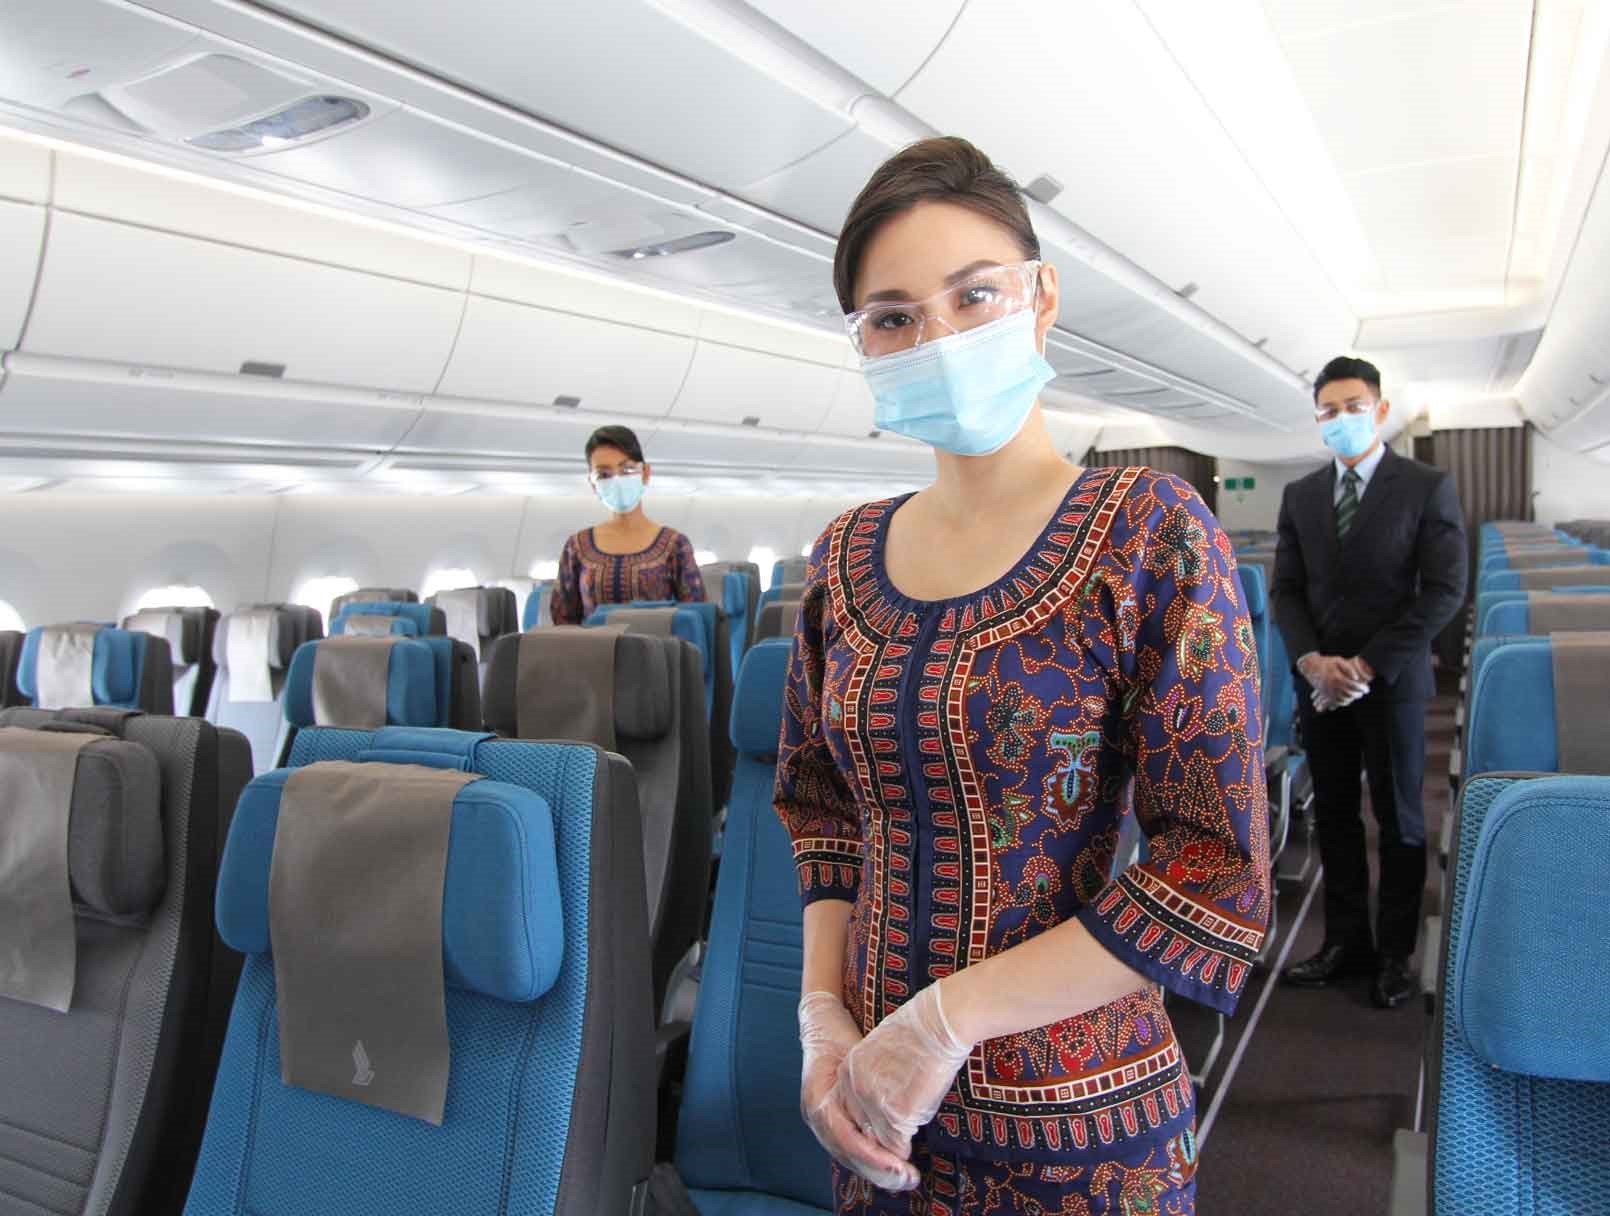 シンガポール航空 お客様の快適な旅を実現するための健康と安全の対策を強化 シンガポール航空のプレスリリース